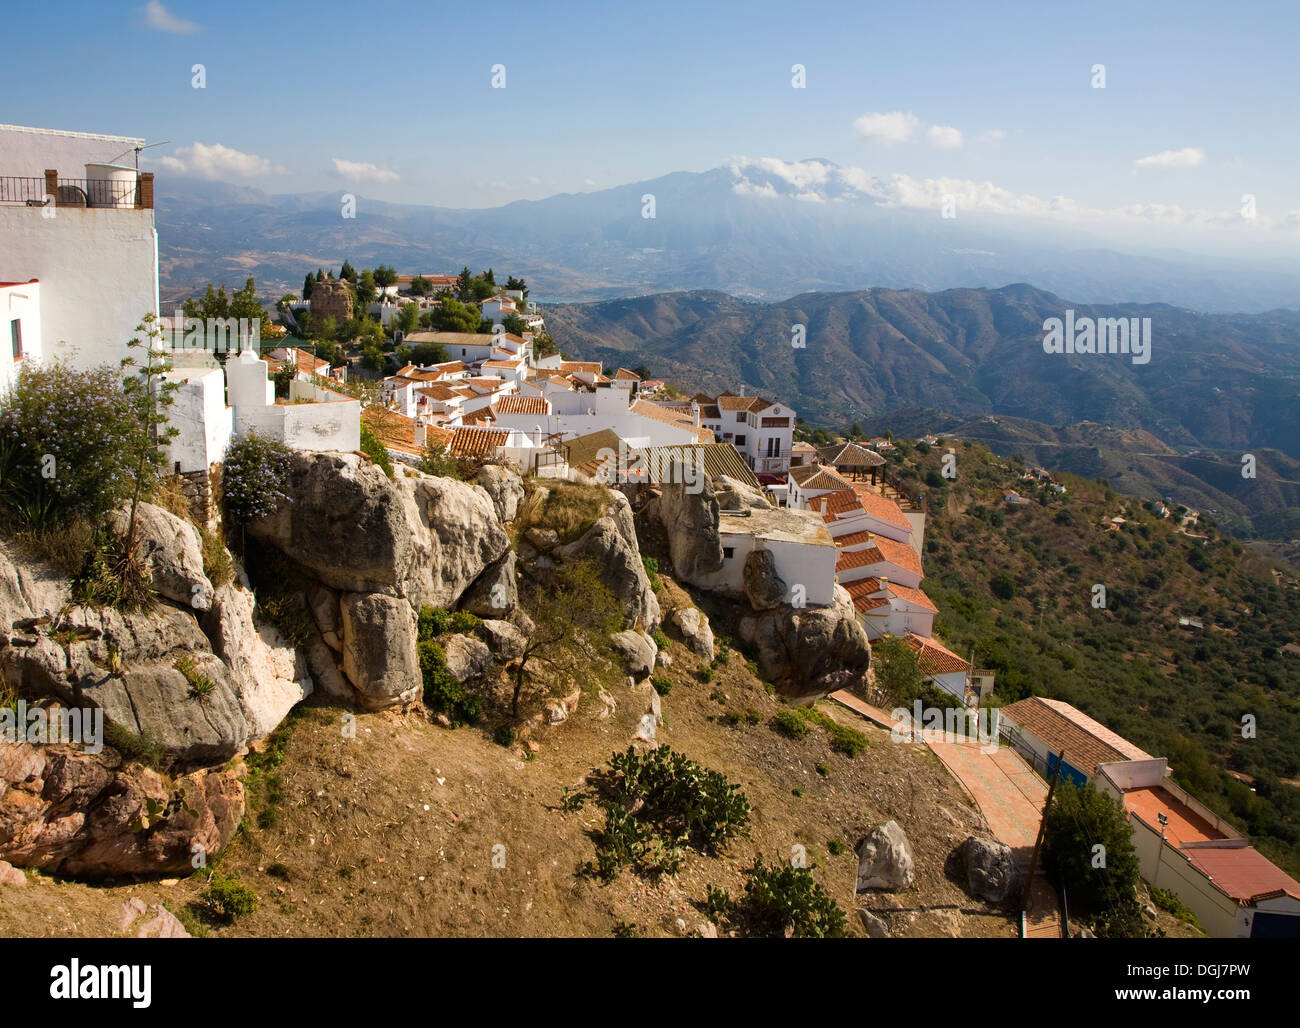 Vue sur le sommet de montagne village Maure de Comares, la province de Malaga, Espagne Banque D'Images